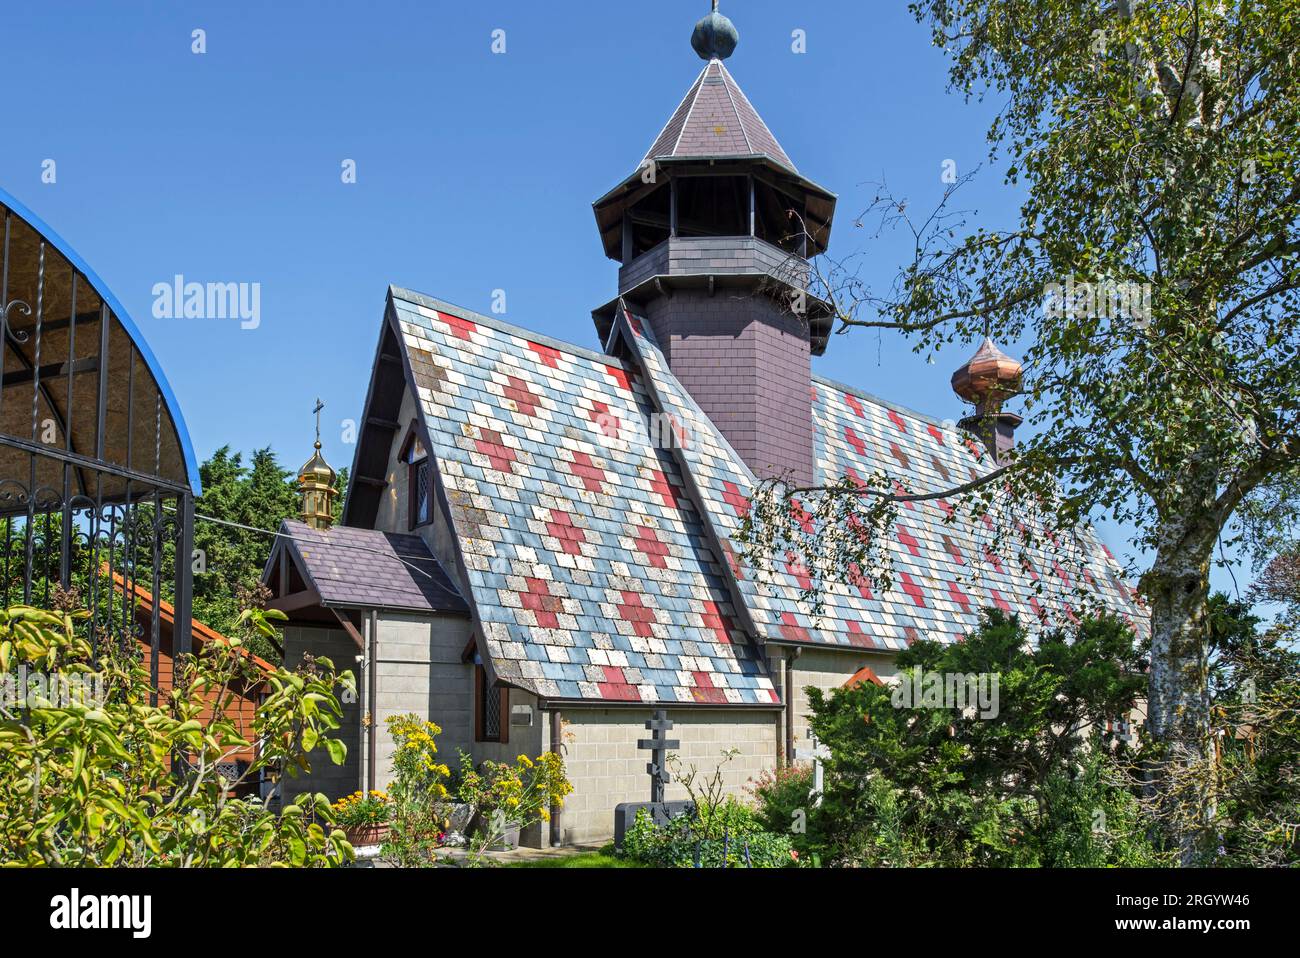 Monastero ortodosso russo e chiesa a Scheewege, Lampernisse, Fiandre occidentali, Belgio Foto Stock